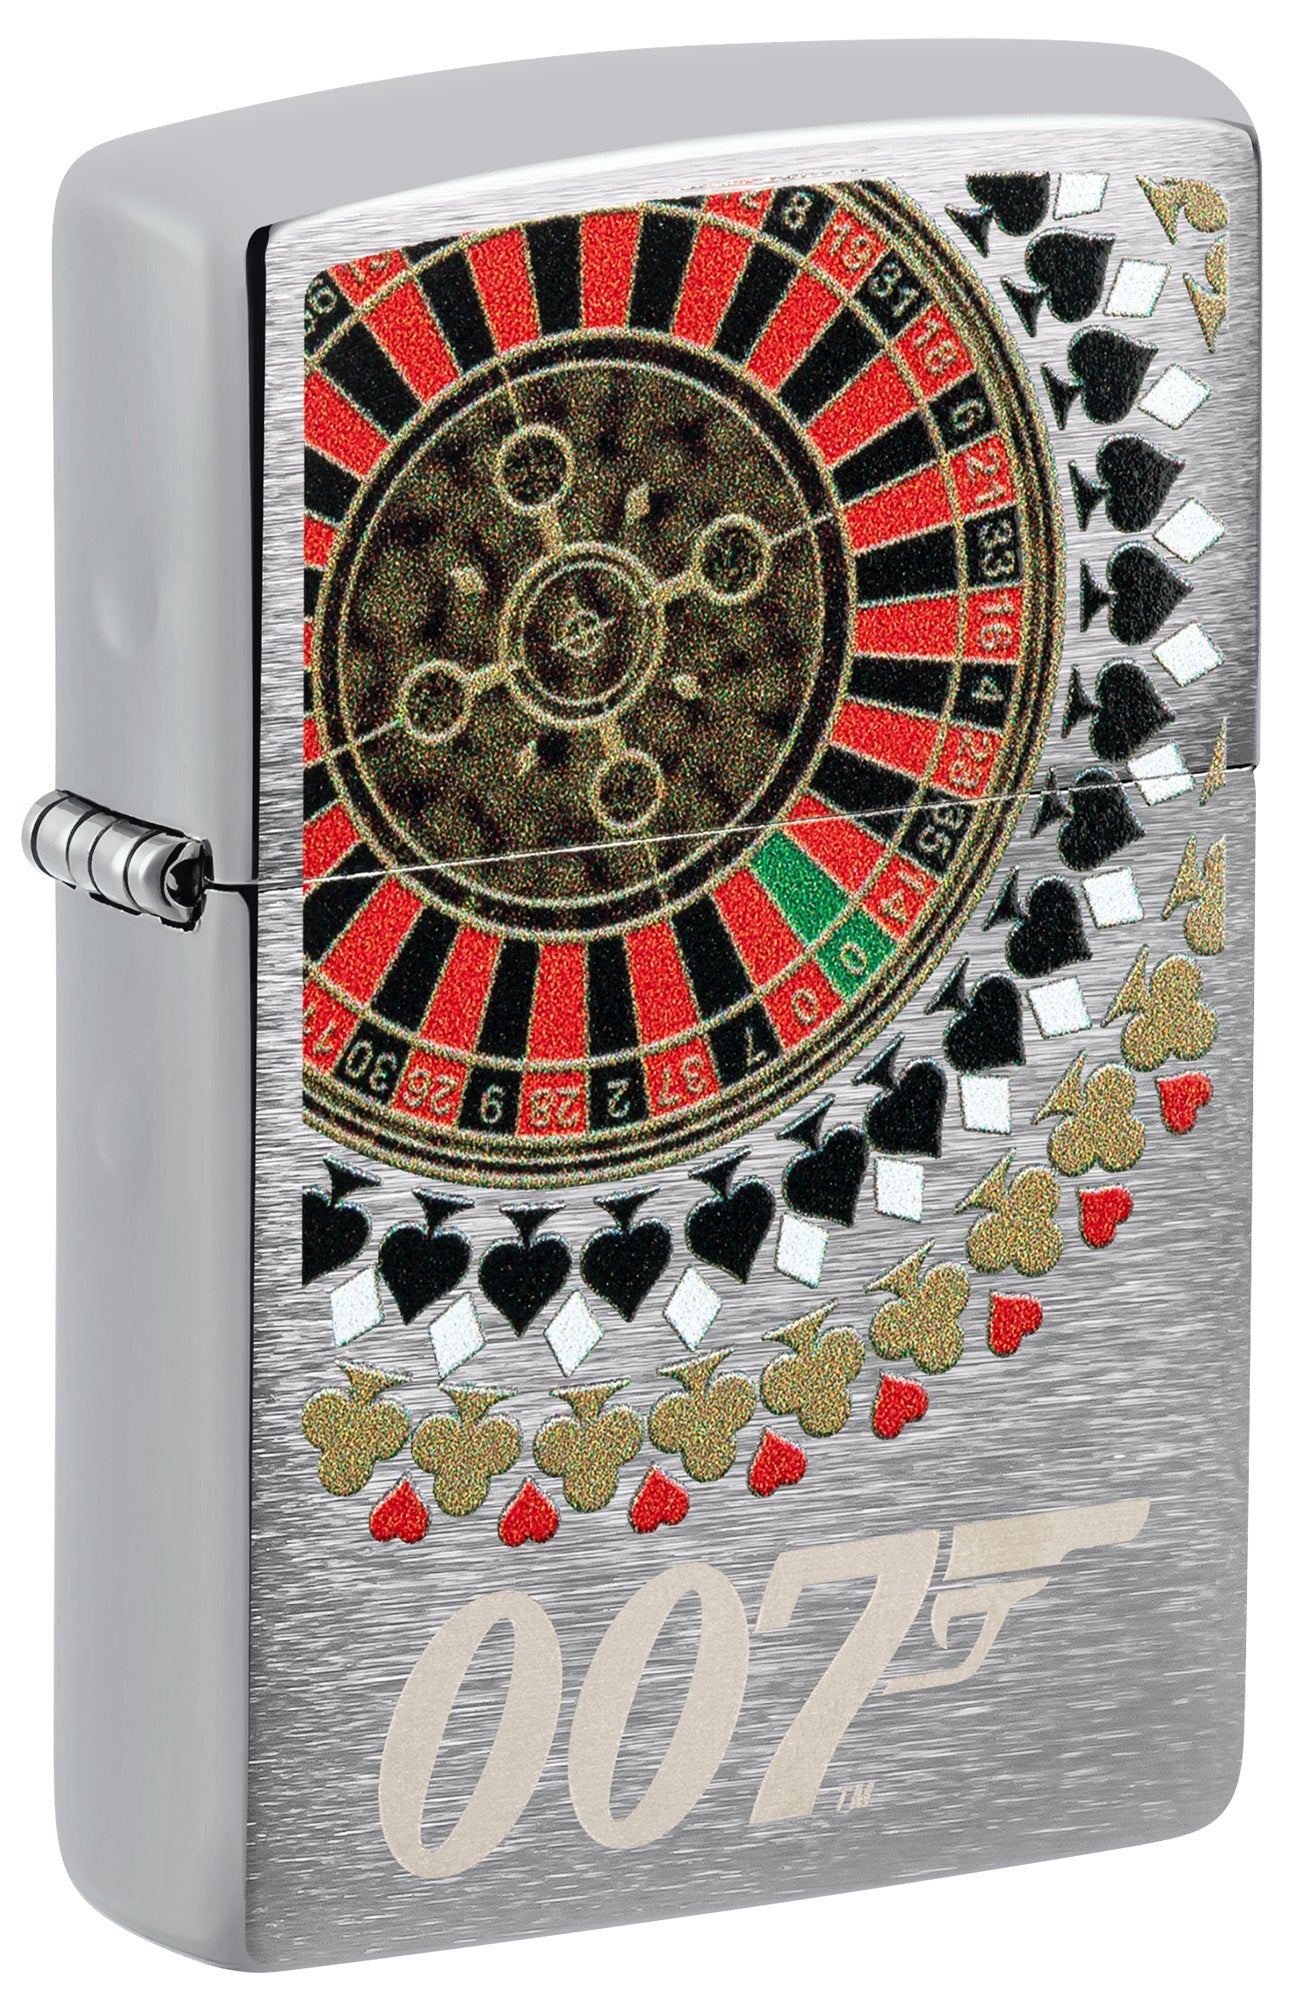 Zippo Lighter: James Bond, Roulette Wheel - Brushed Chrome 81519